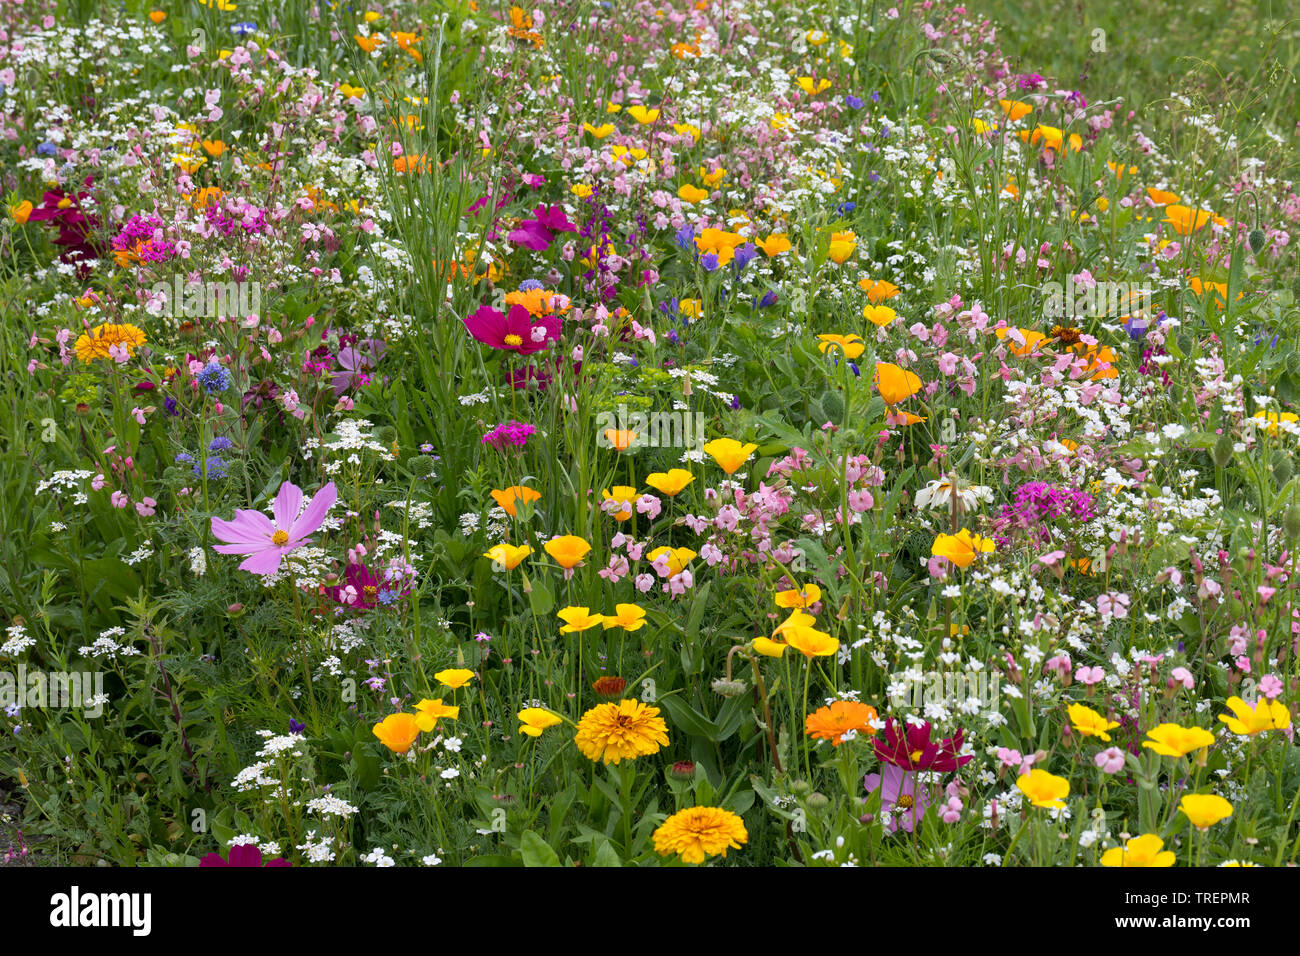 Blumenwiese, Wildblumenwiese, Wildblumen-Wiese, Blumenmischung, Wildblumen, Blumenmischung 'Werratal', Insektenschutz, prato di fiori selvaggi Foto Stock